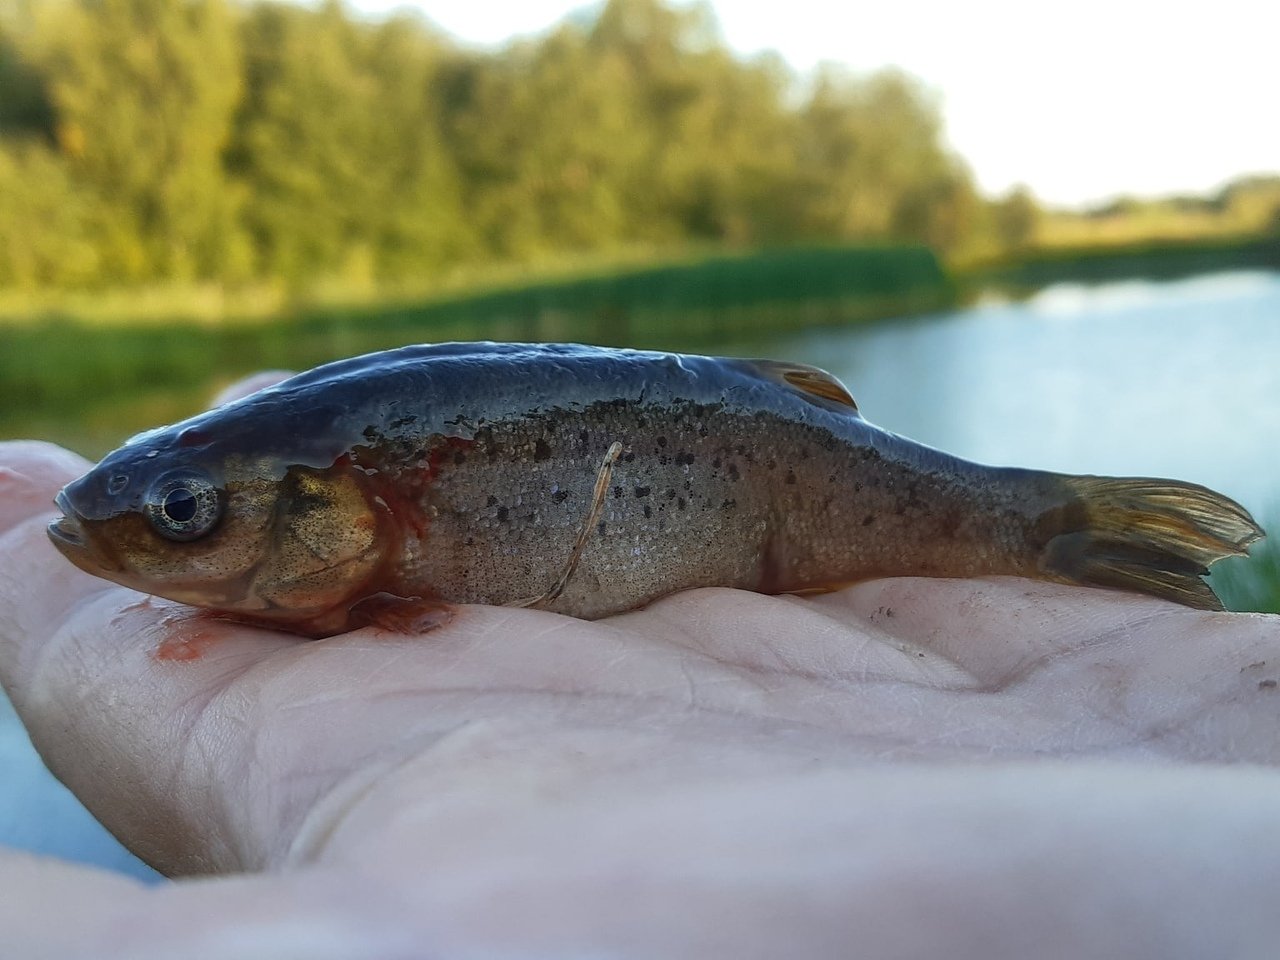 Гольян или красавка – рыба с яркой окраской